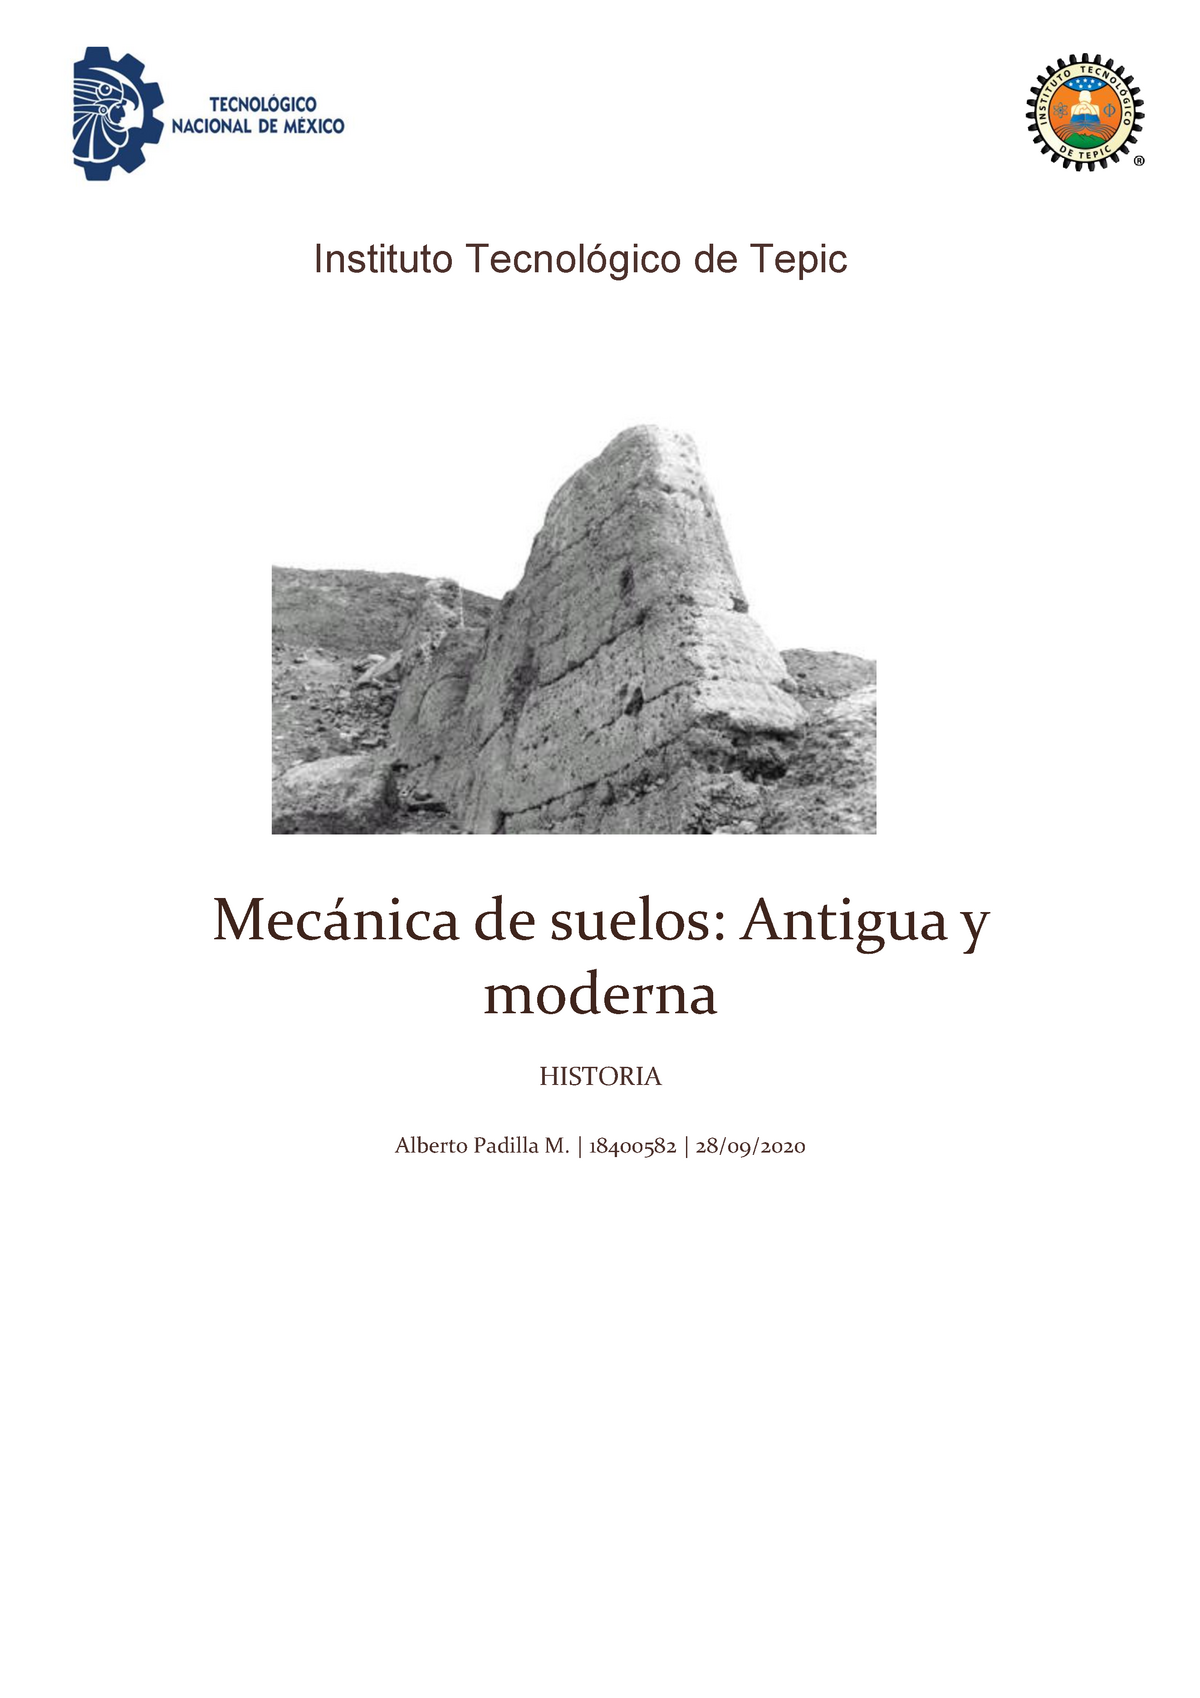 mecanica de suelos - Mecánica de suelos: Antigua y moderna HISTORIA Alberto  Padilla M. | 18400582 | - Studocu